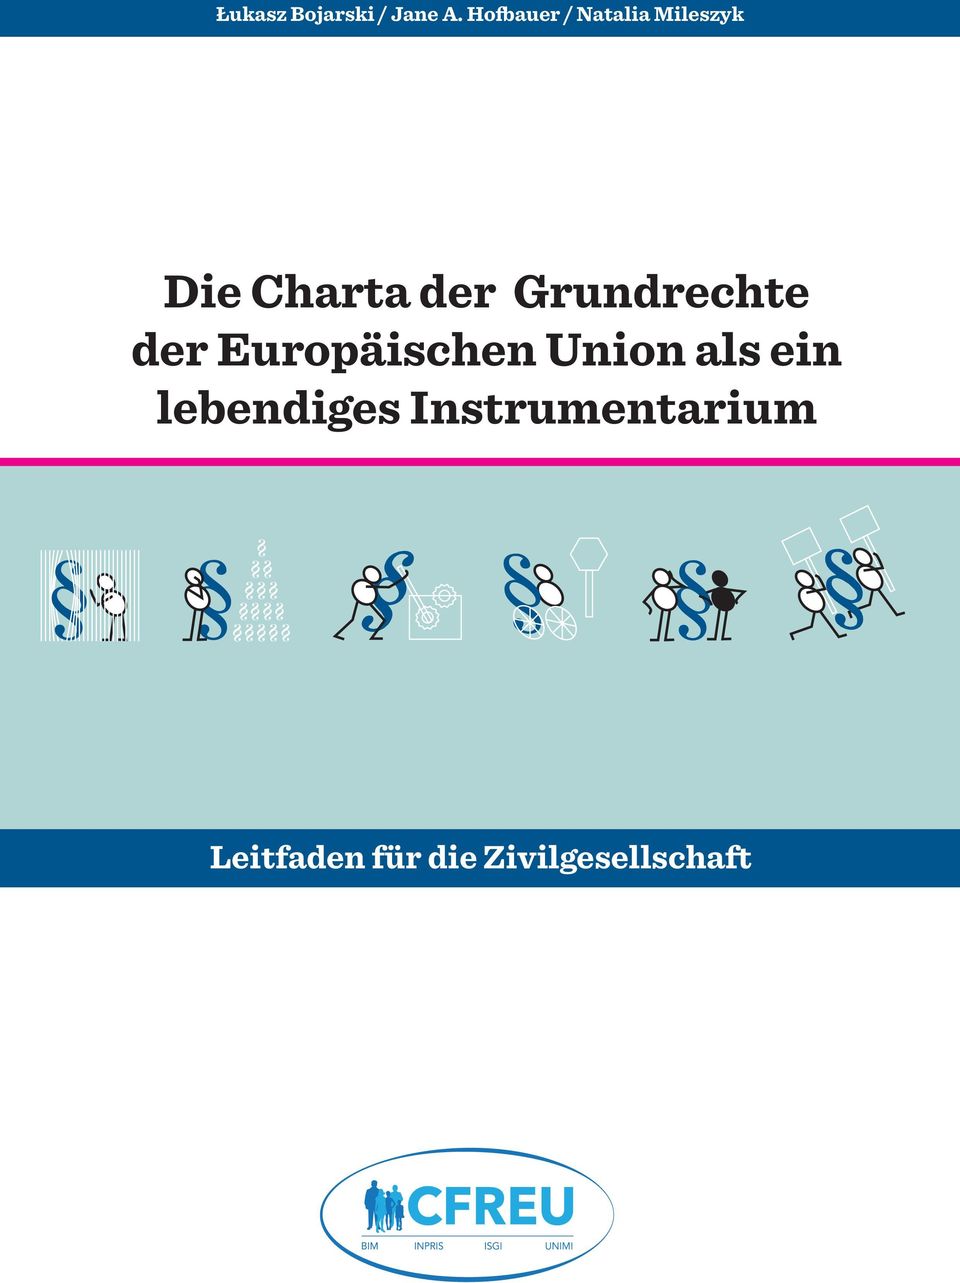 Grundrechte der Europäischen Union als ein